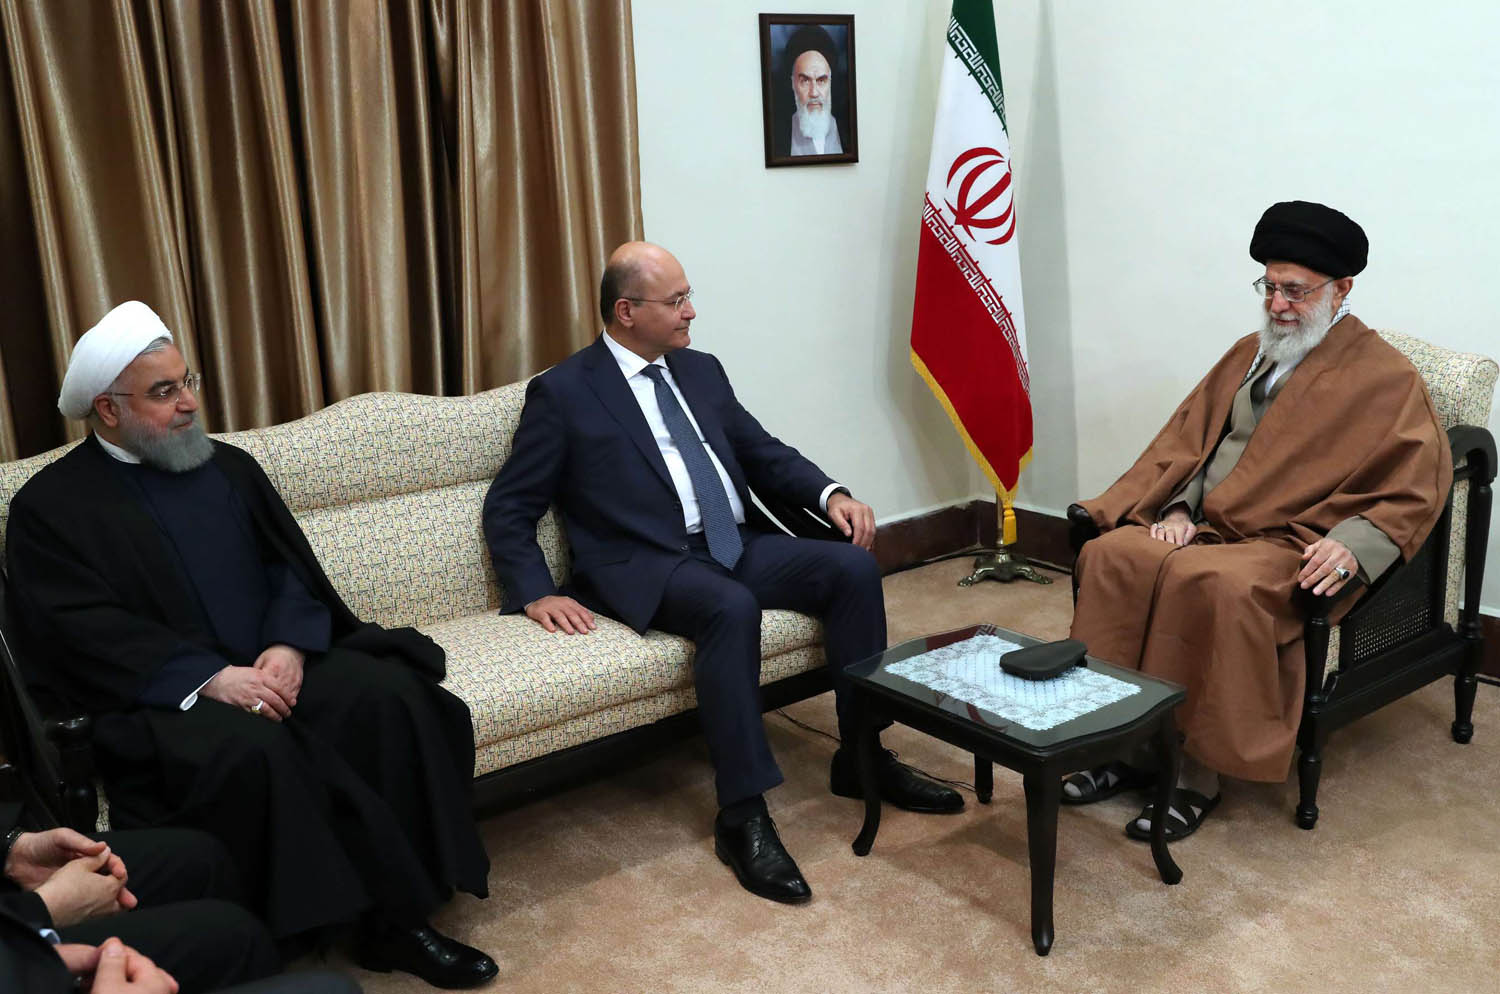 المرشد الأعلى علي خامنئي يستقبل الرئيس العراقي برهم صالح بحضور الرئيس الإيراني حسن روحاني